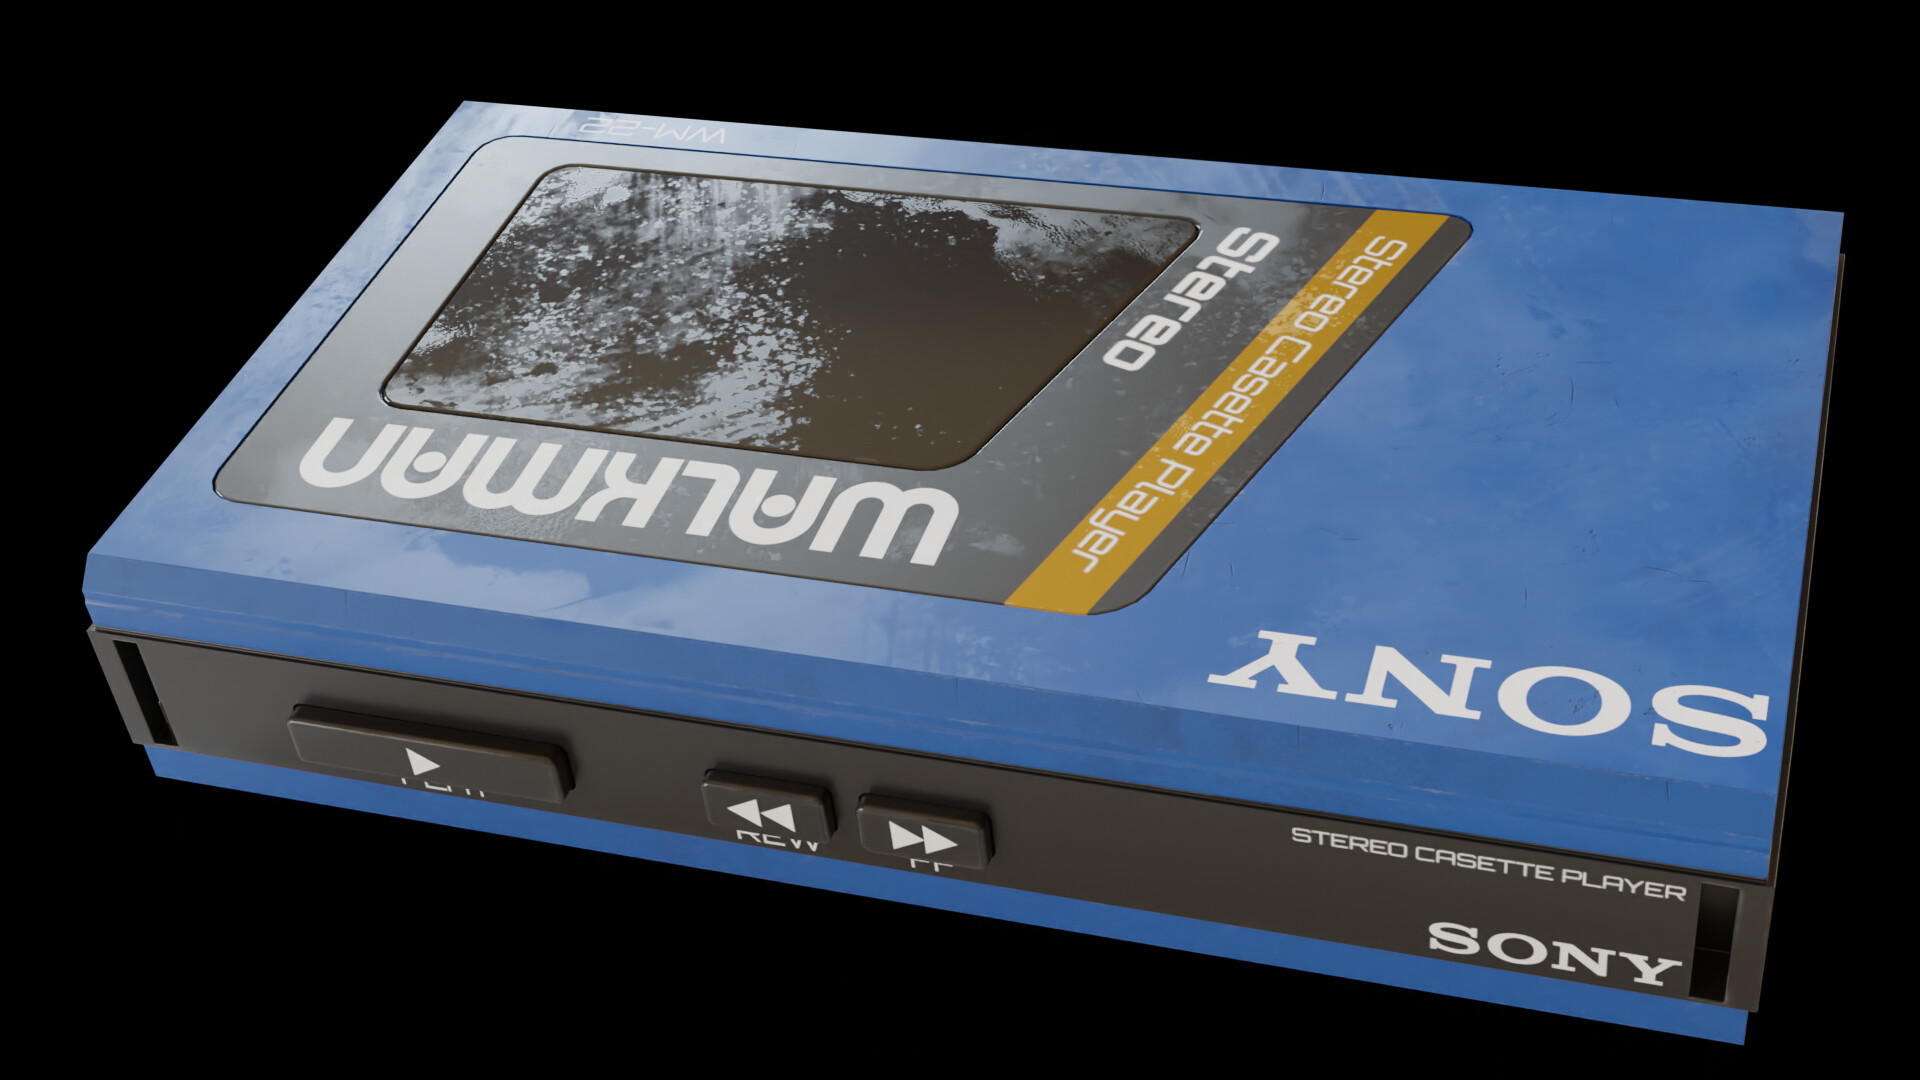 ArtStation - Sony Walkman